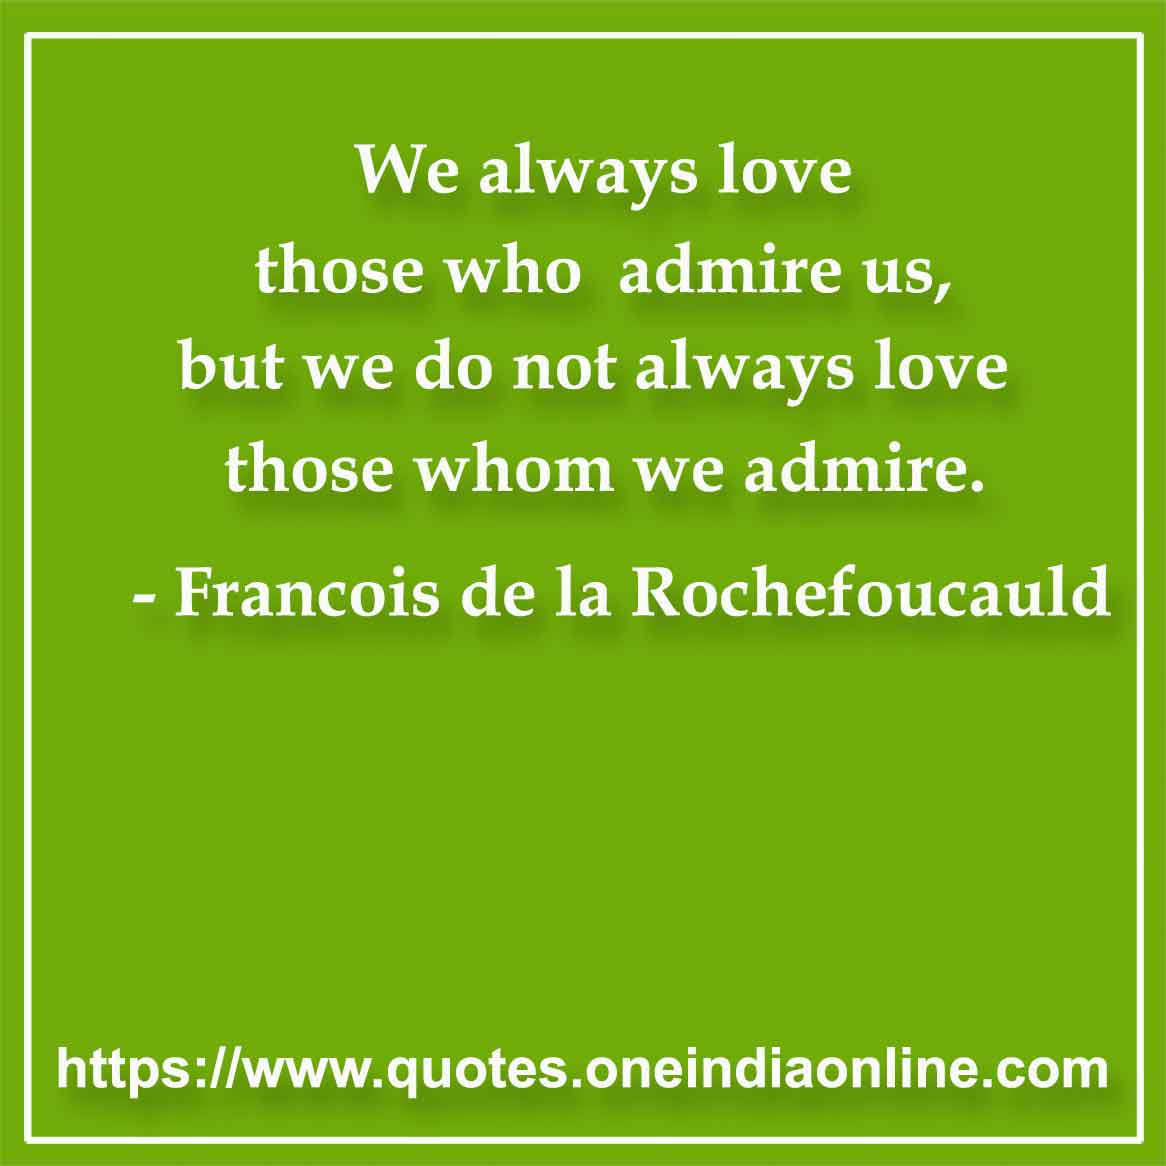 We always love those who admire us, but we do not always love those whom we admire.

- Admiration Quotes by Francois de la Rochefoucauld